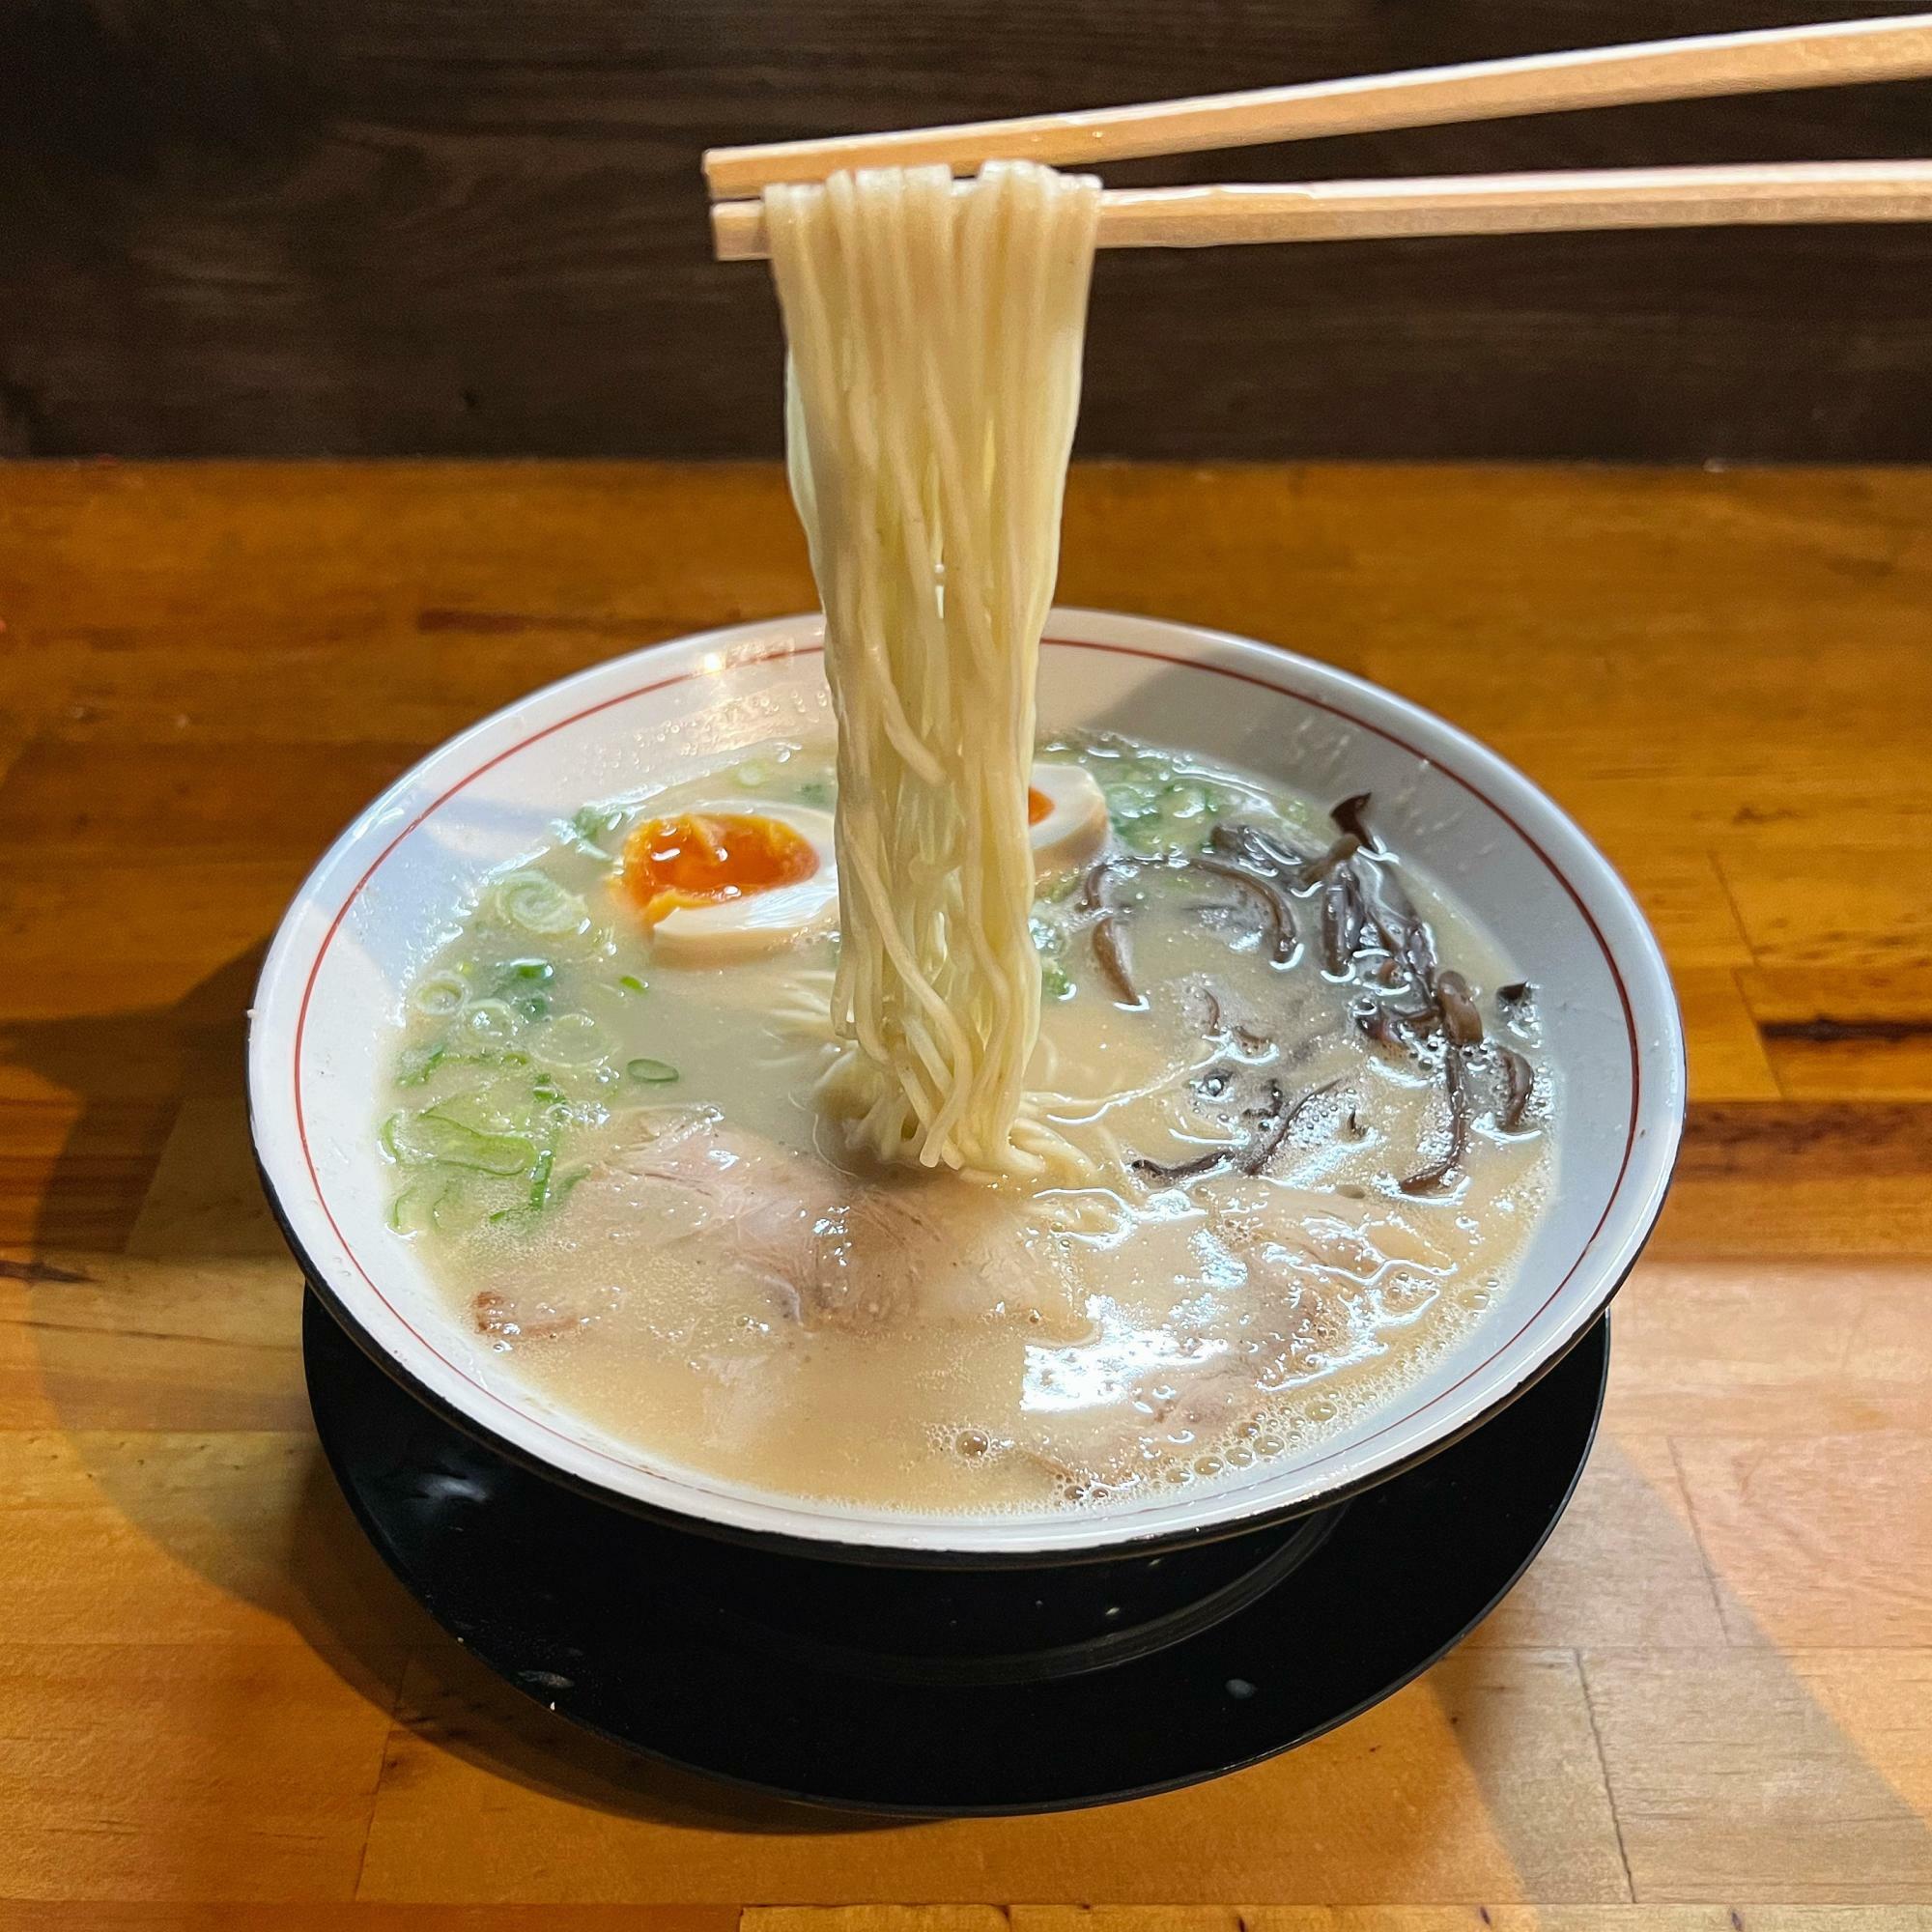 麺は、ストレートな細麺ながら平ぺったい形状でスープが絡みやすい。